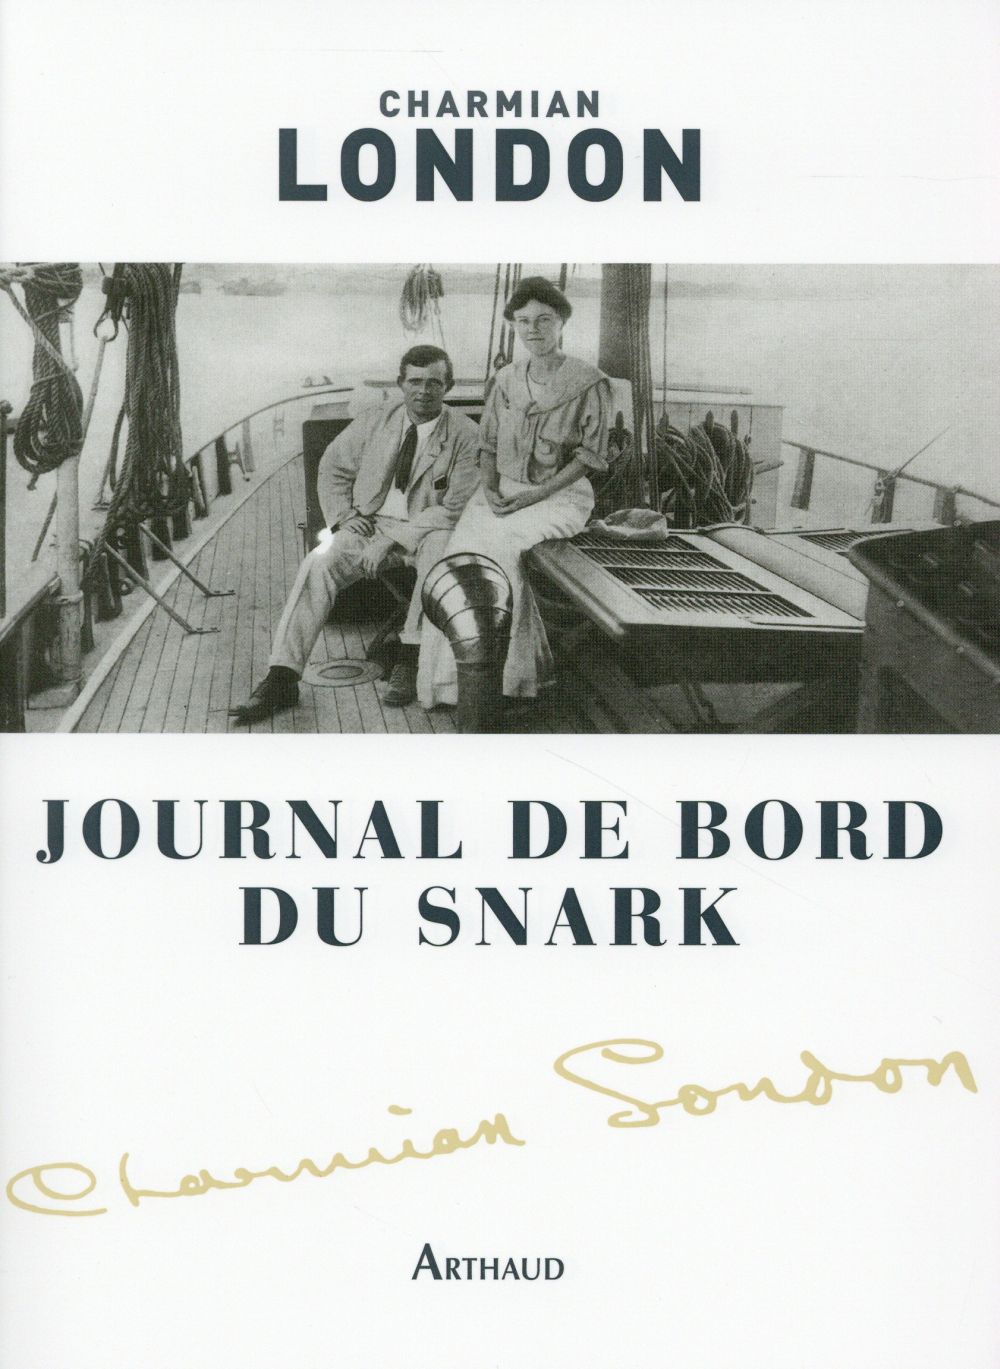 JOURNAL DE BORD DU SNARK